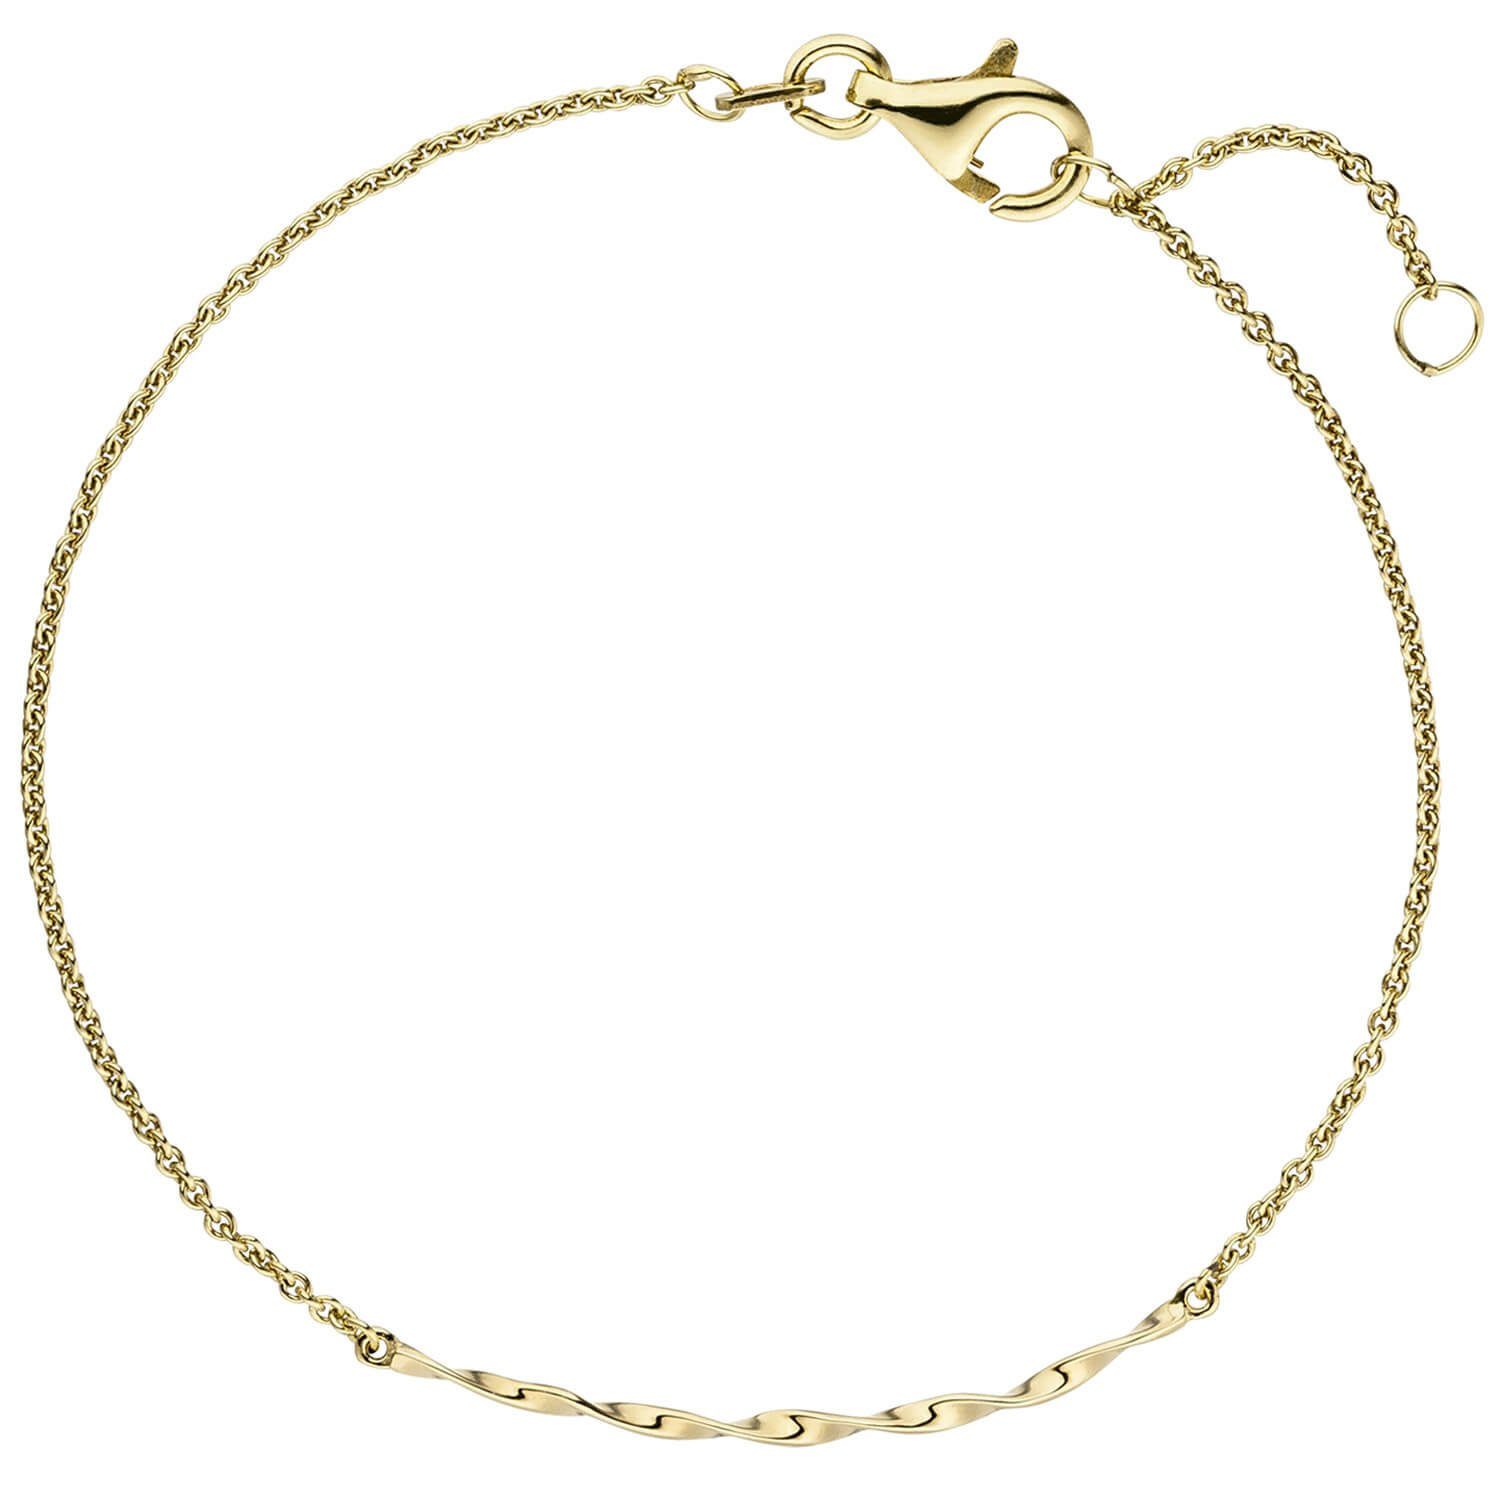 Schmuck Krone Goldarmband aus Gold gedreht Armband Gelbgold Teil 15,5-17,5cm 585 mittleres glänzend